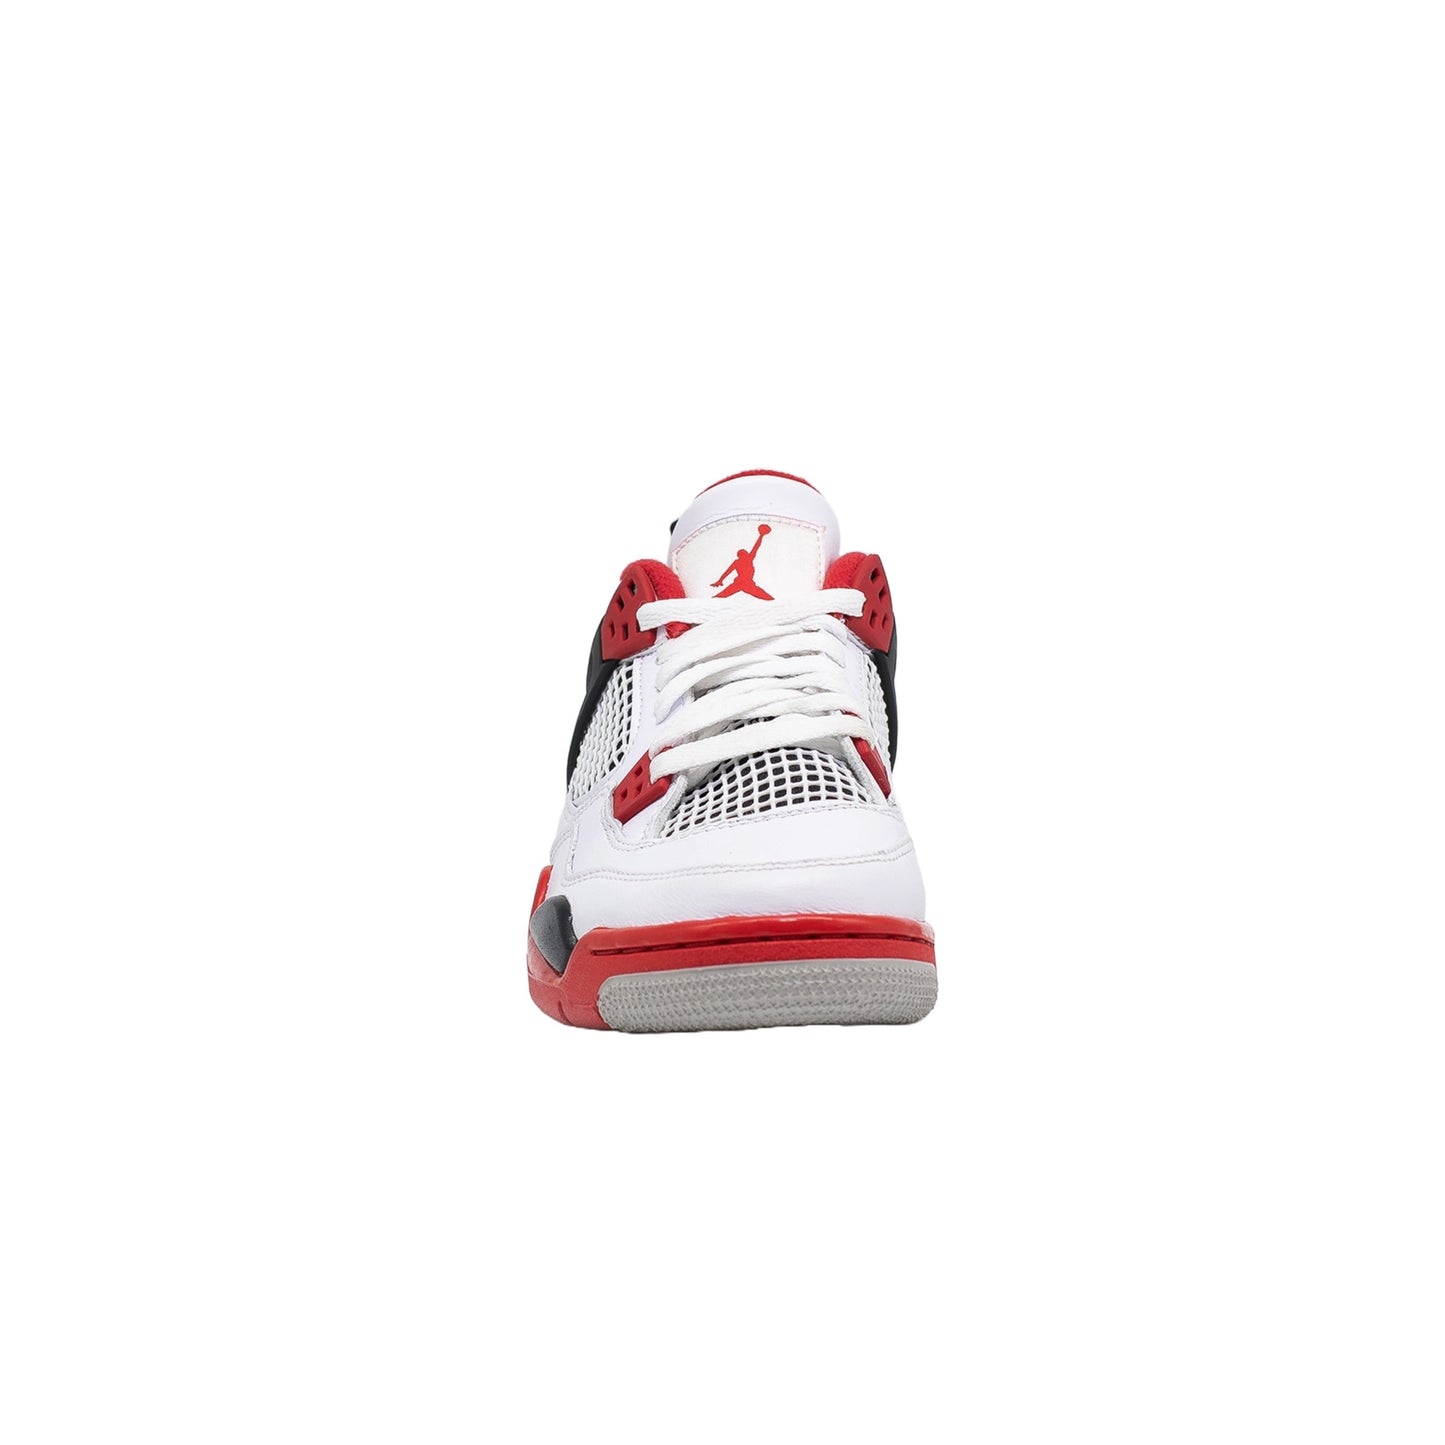 Air Jordan 4 (GS), Fire Red (2020)